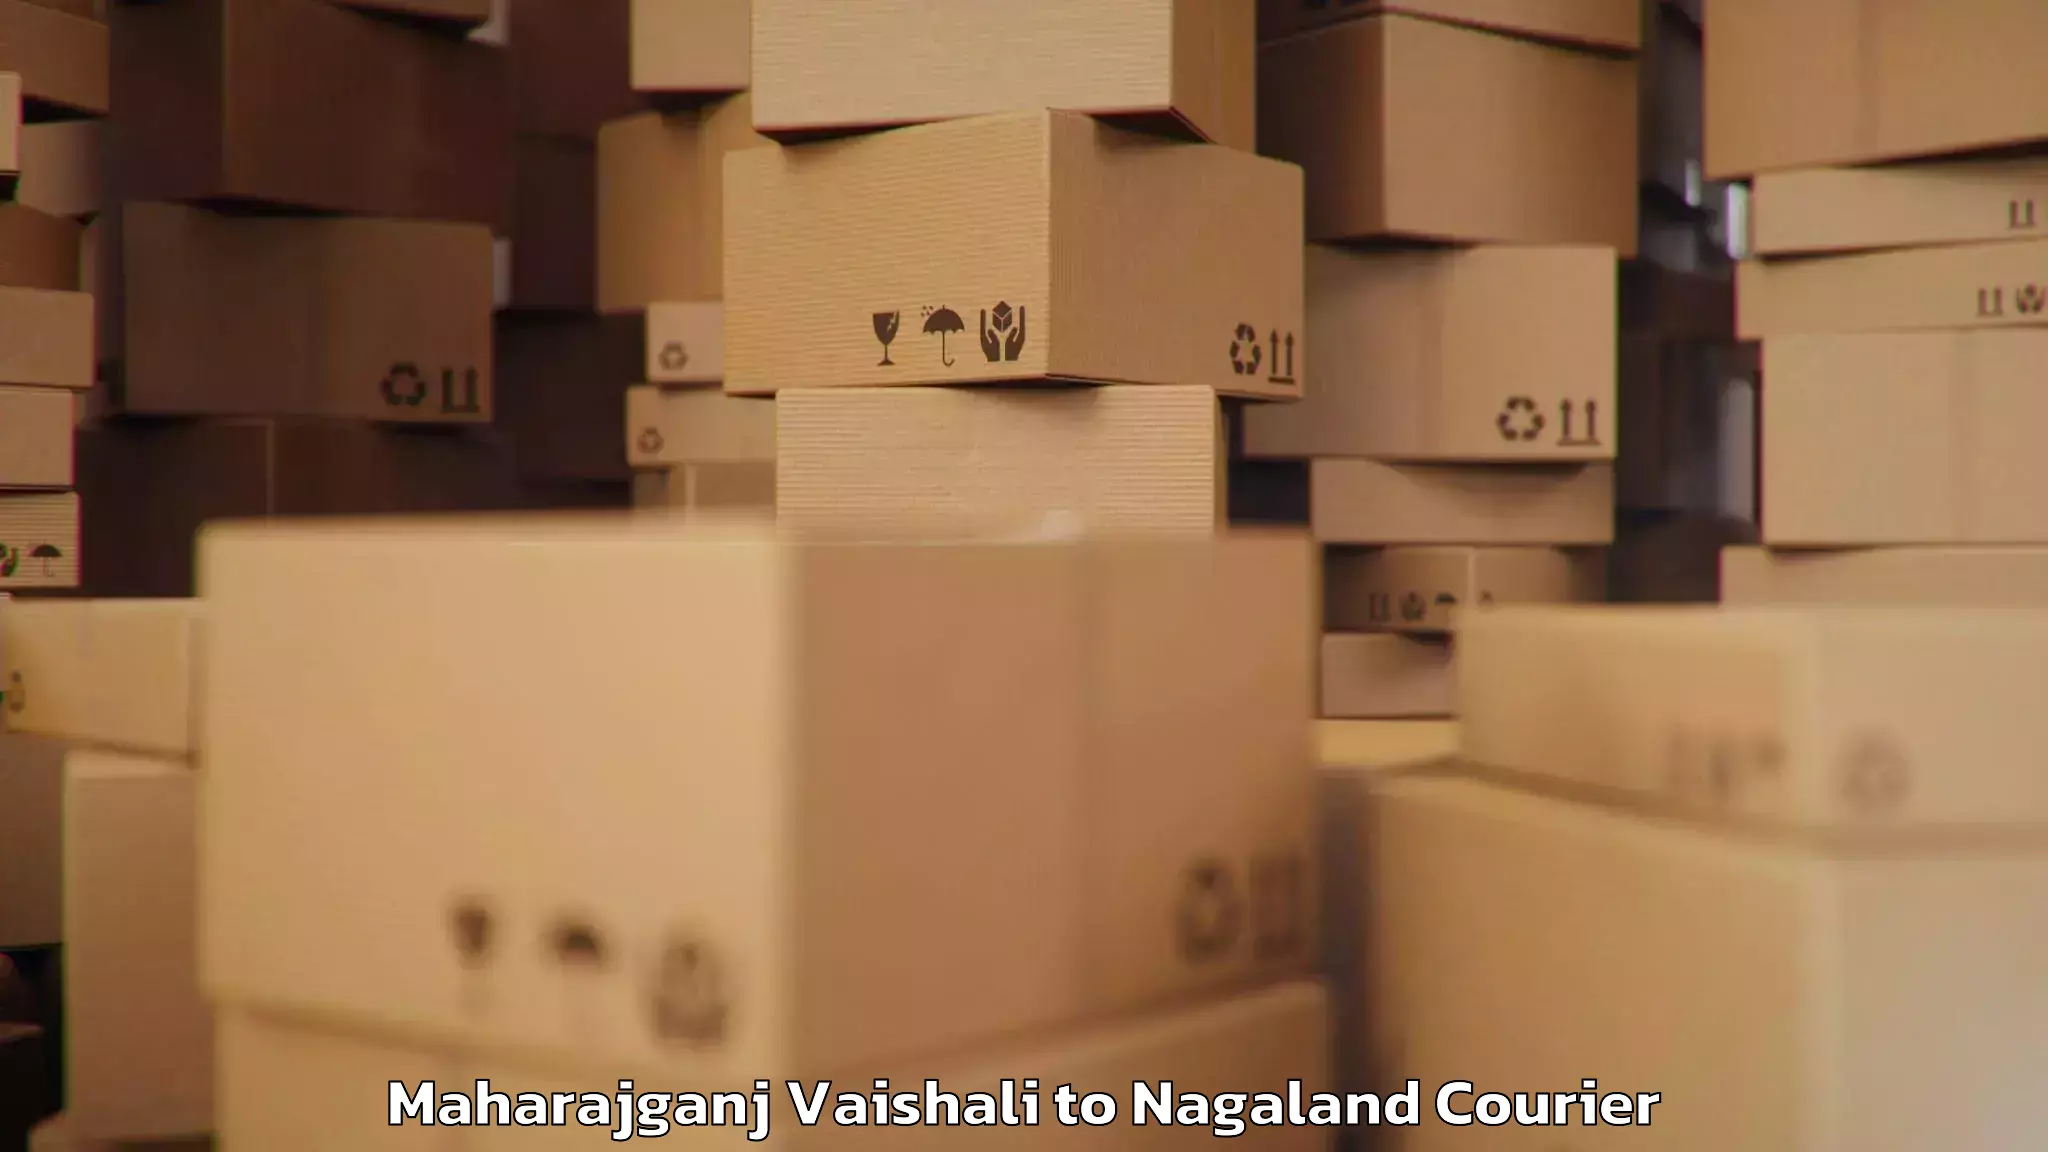 Digital baggage courier Maharajganj Vaishali to Nagaland